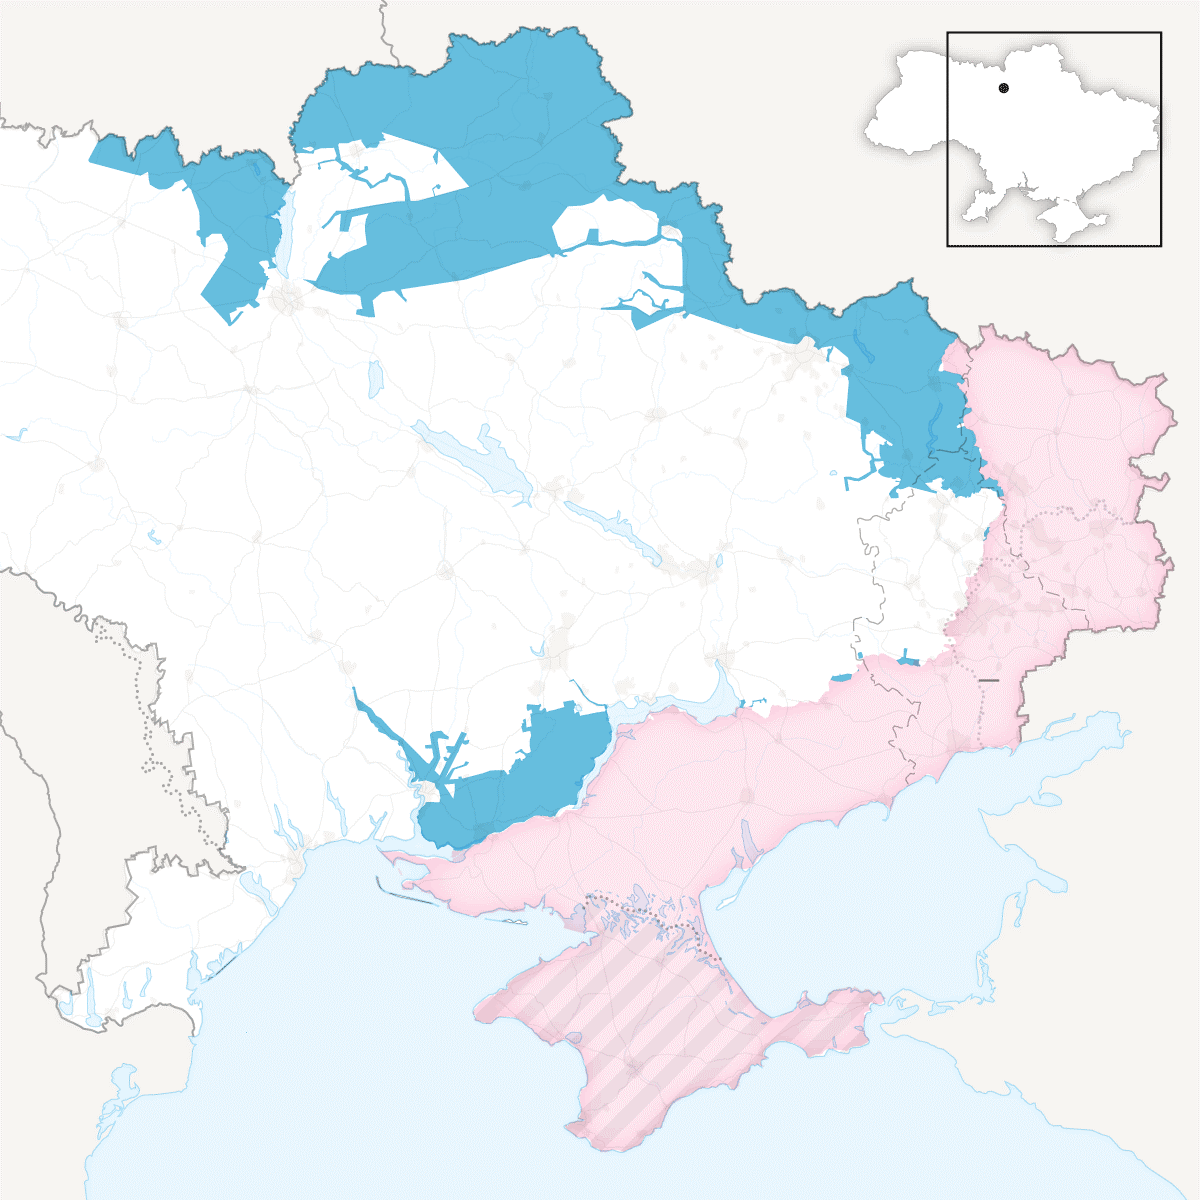 2) Οι τελευταίες εξελίξεις στις 13/11/2022 . Η Ρωσία φαίνεται ο περιορίζεται στα ζωτικά γι' αυτήν εδάφη. Με μπλε εικονίζονται τα εδάφη που επανακατέλαβαν οι Ουκρανοί και με κόκκινο αυτά που κατείχαν οι Ρωσικές δυνάμεις.